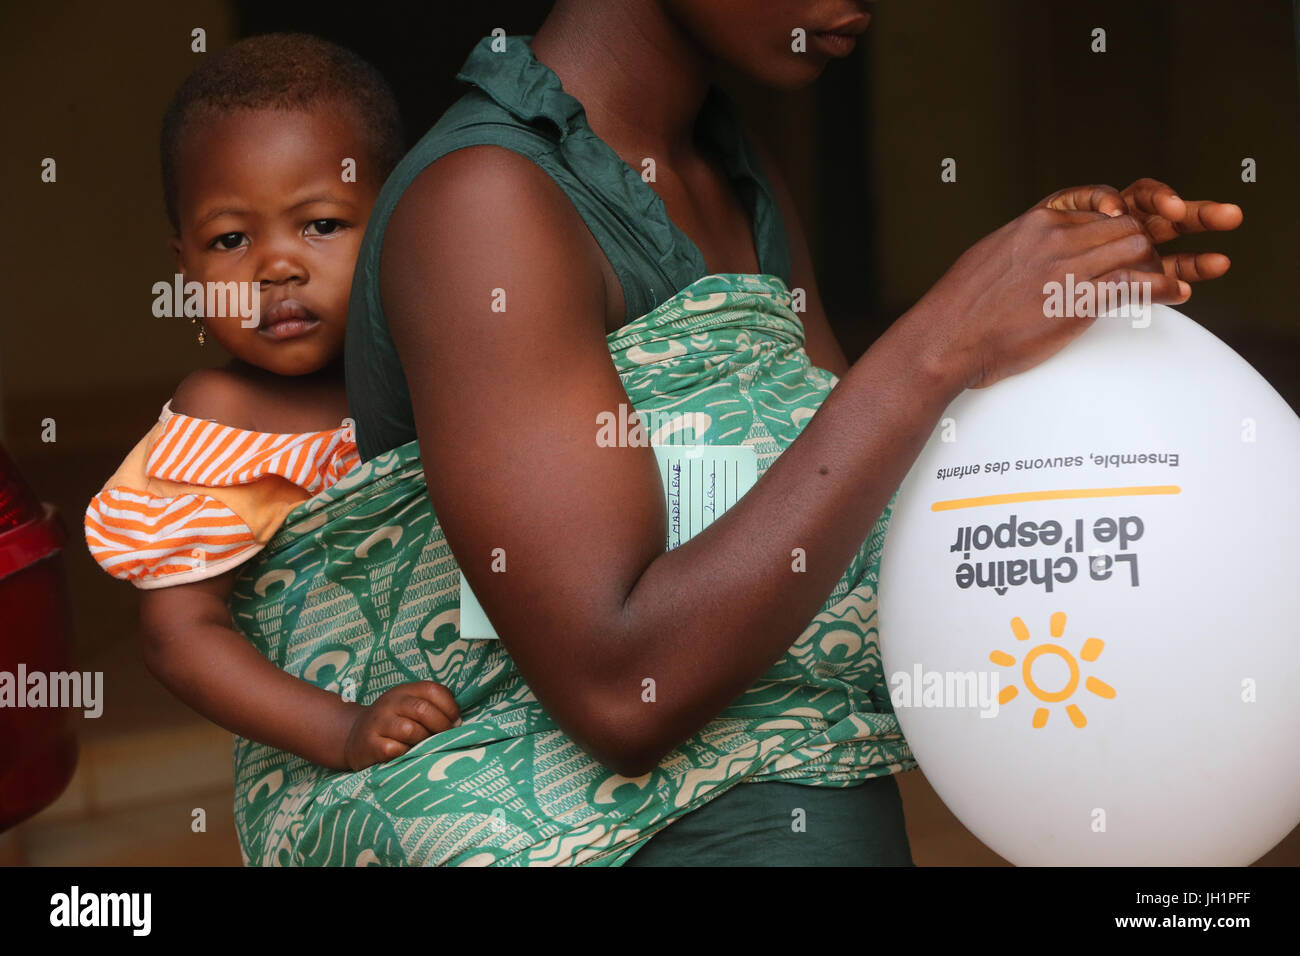 Ong francese : La Chaine de l'Espoir. Medicina Umanitaria. Il Togo. Foto Stock